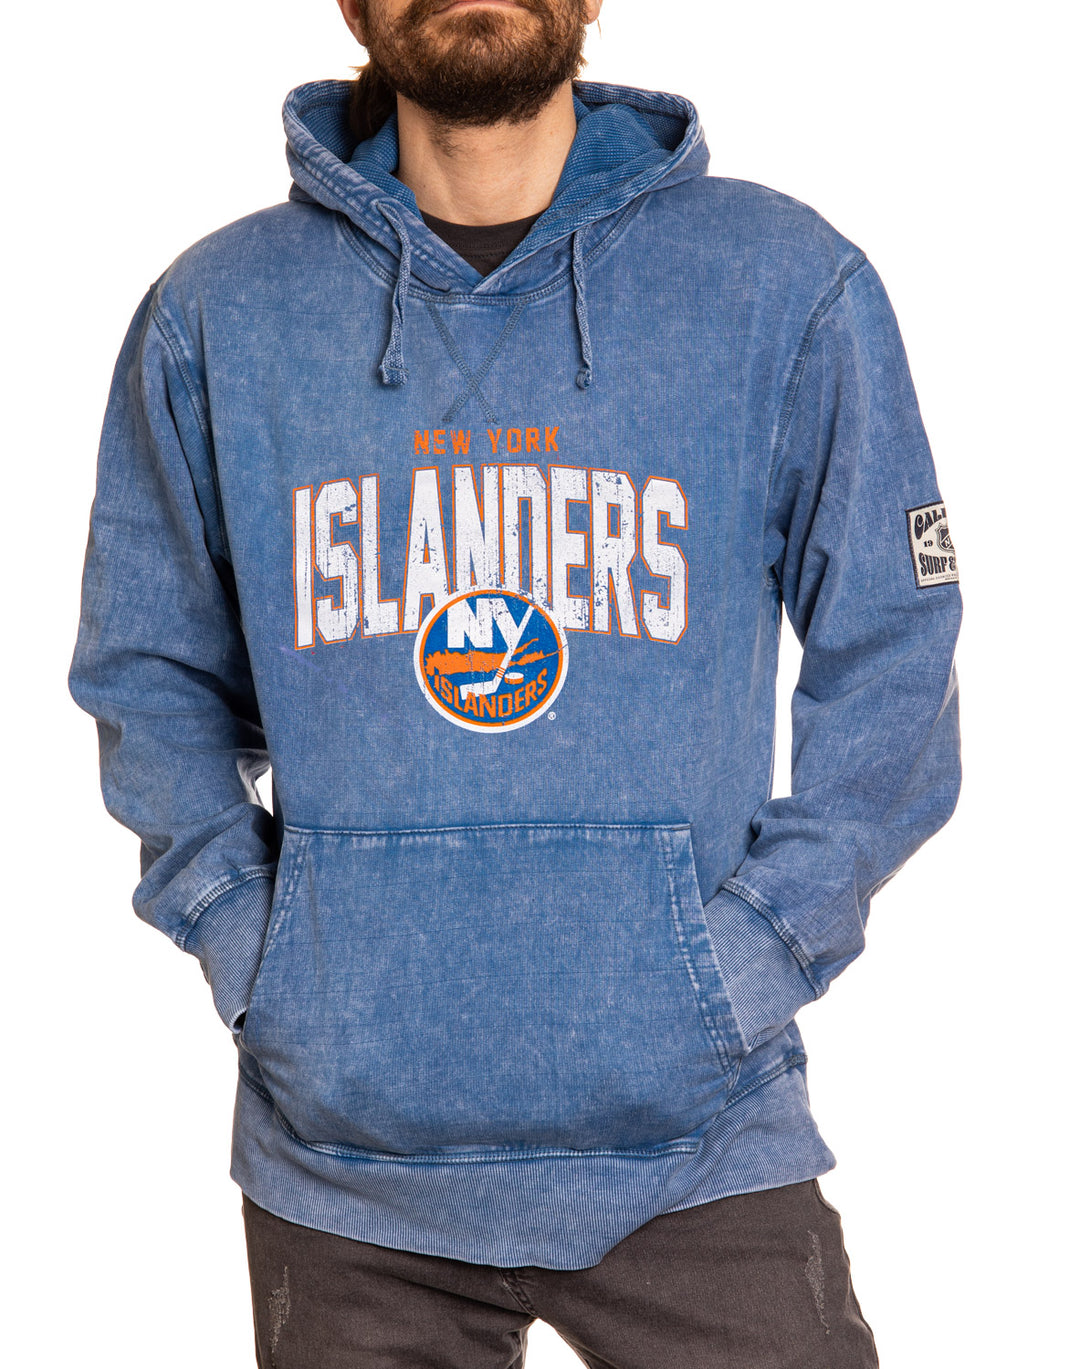 Official NHL licensed New York Islanders Unisex Blue Acid Wash Hoodie